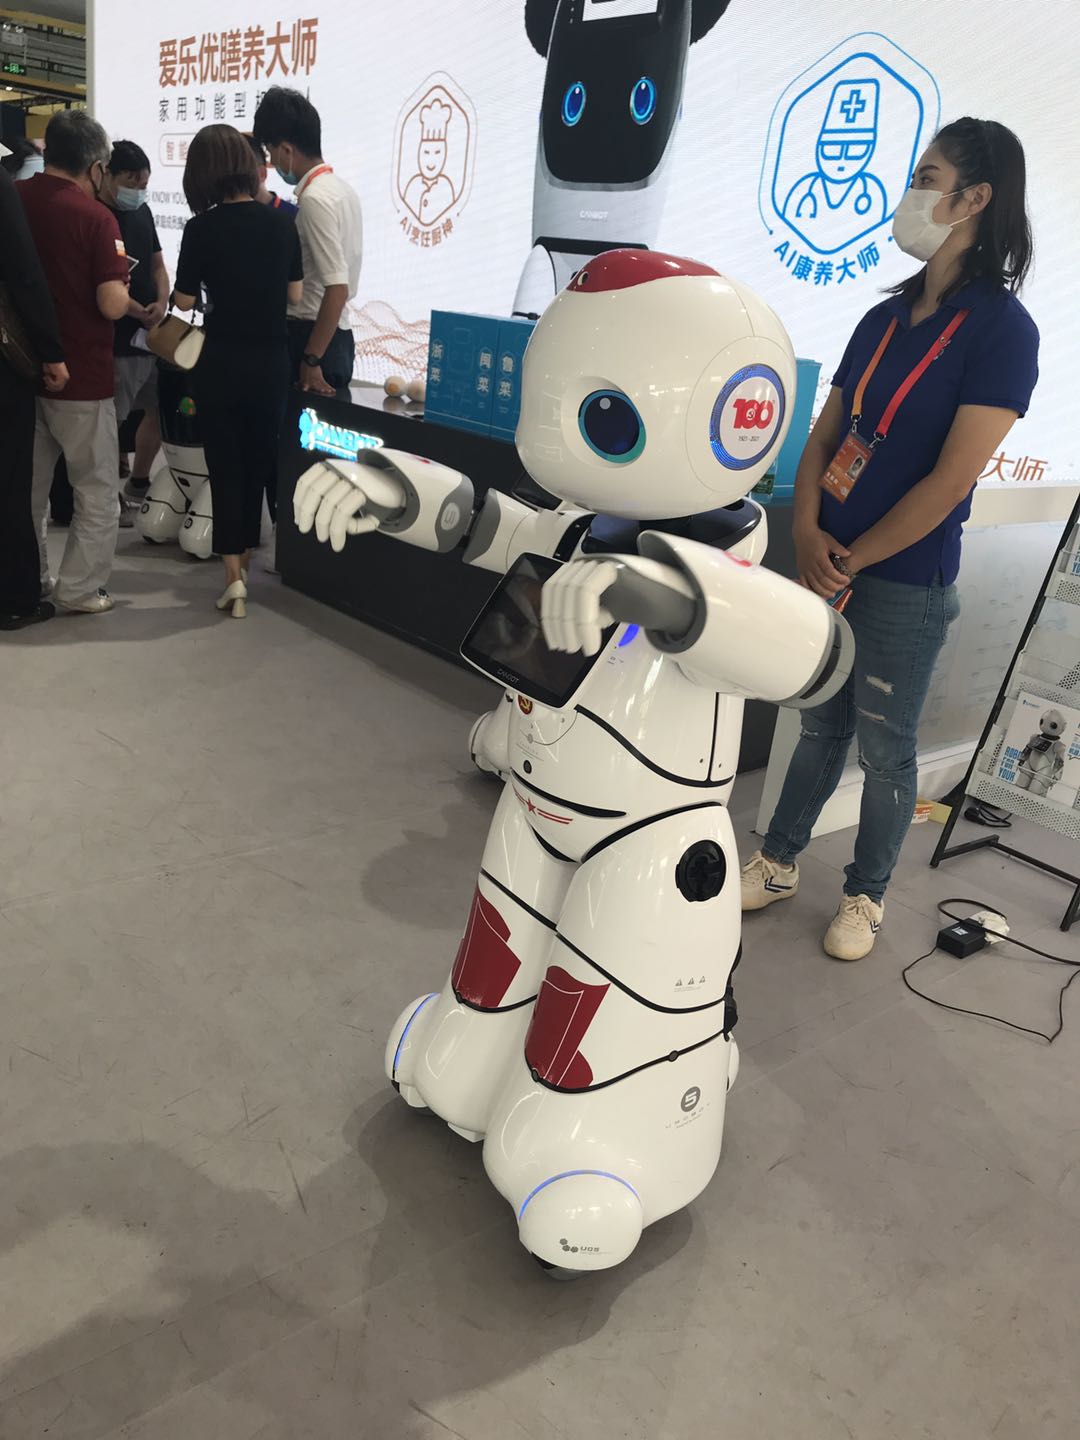 หุ่นยนต์บริการในงานมหกรรมการค้าภาคบริการนานาชาติจีนประจำปี 2020_fororder_0909服务机器人